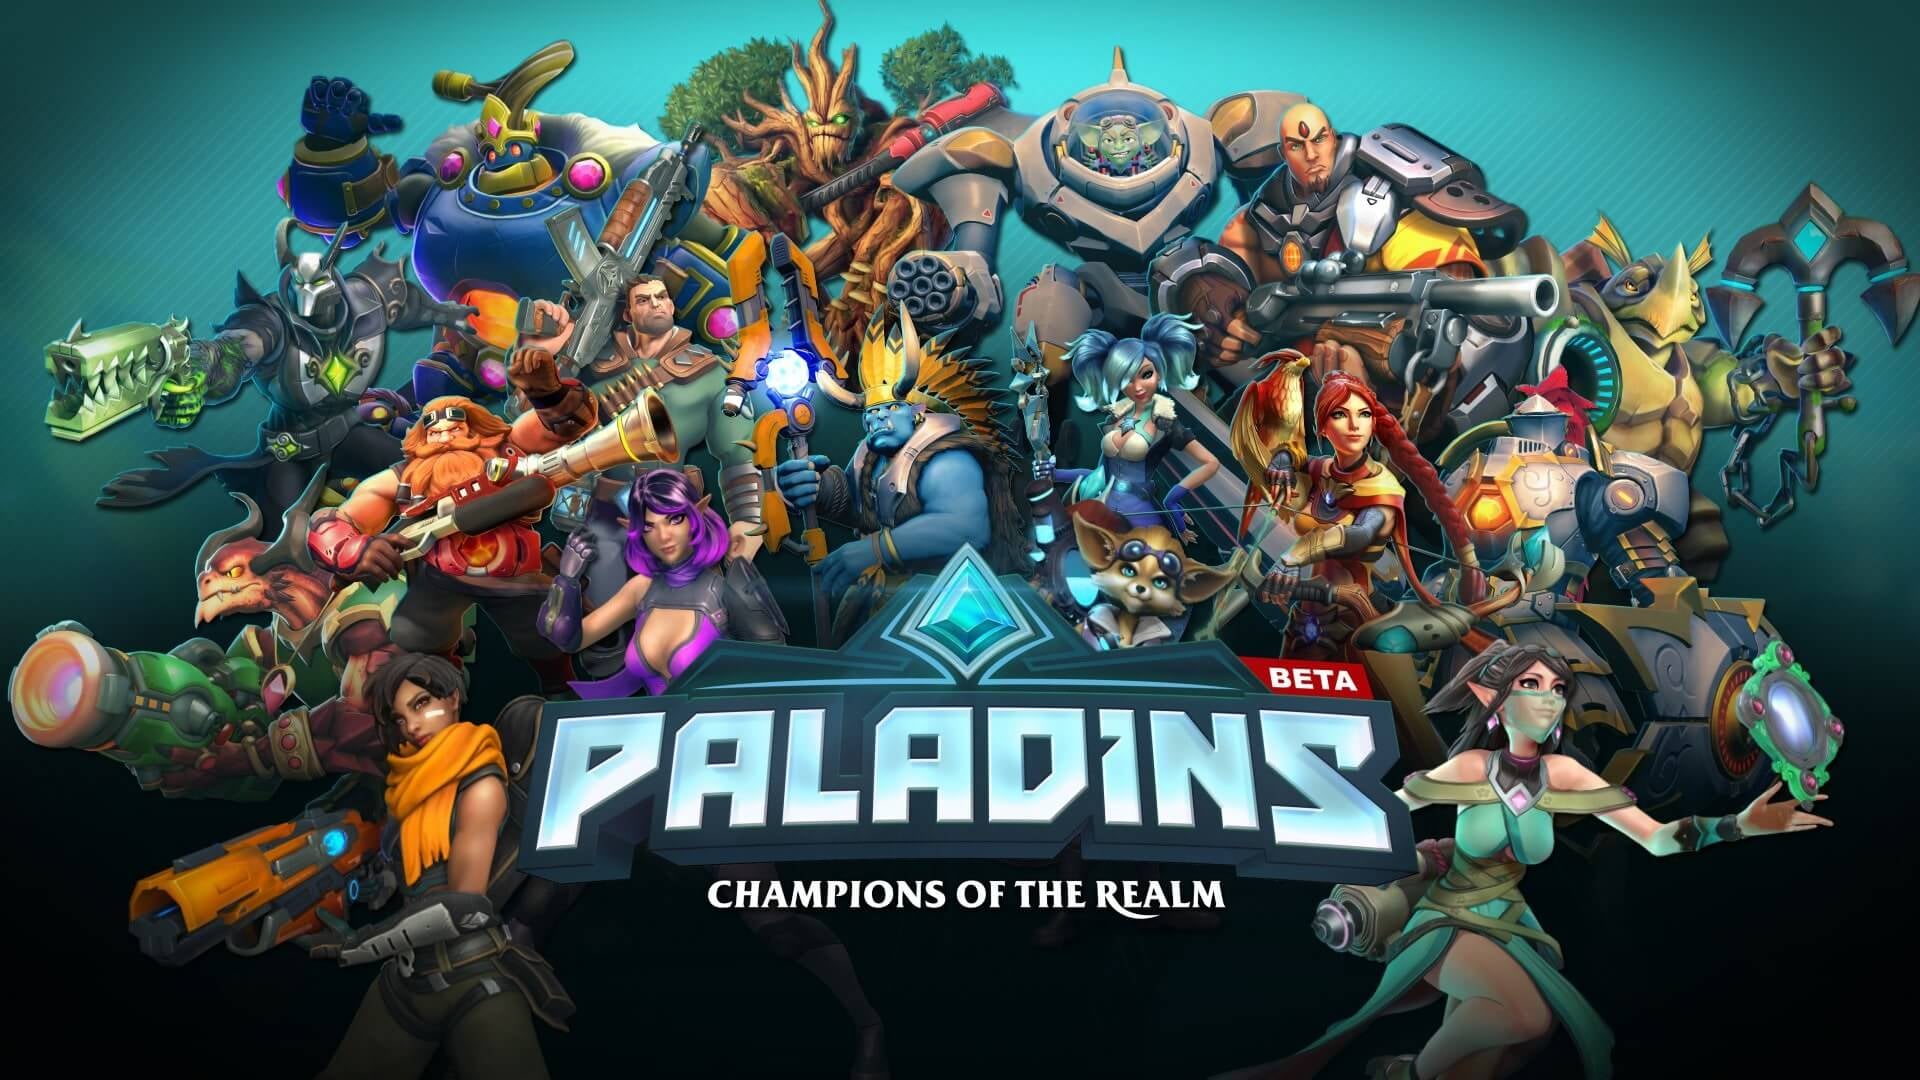 Kết quả hình ảnh cho Paladins: Champions of the Realm